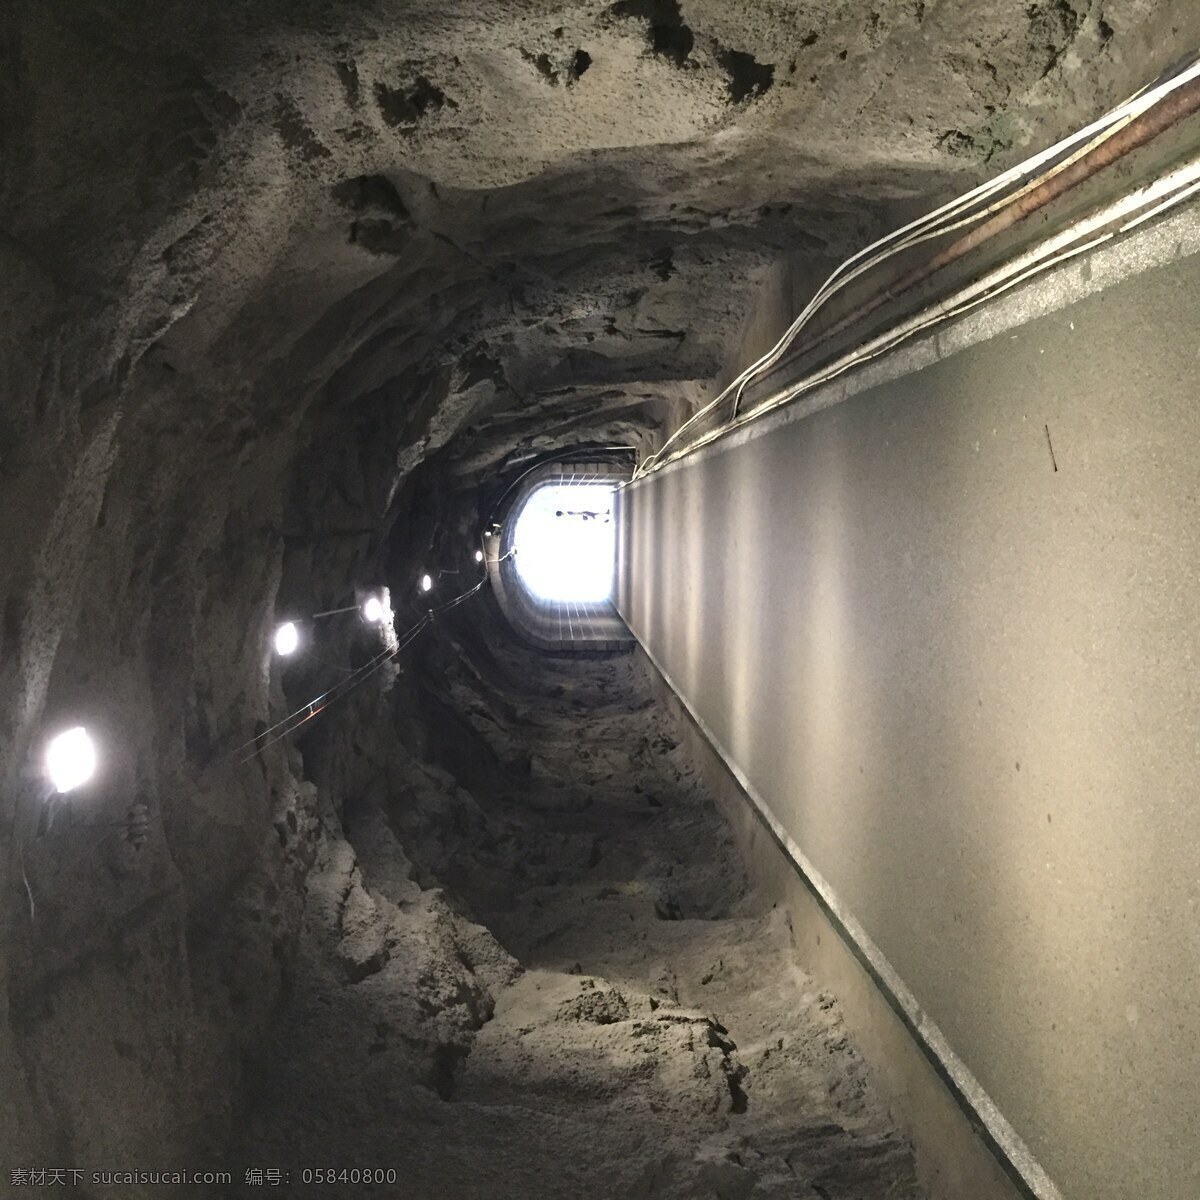 厦门隧道洞口 旅行 原图 无人 高清 厦门 隧道 洞口 光源 旅游摄影 国内旅游